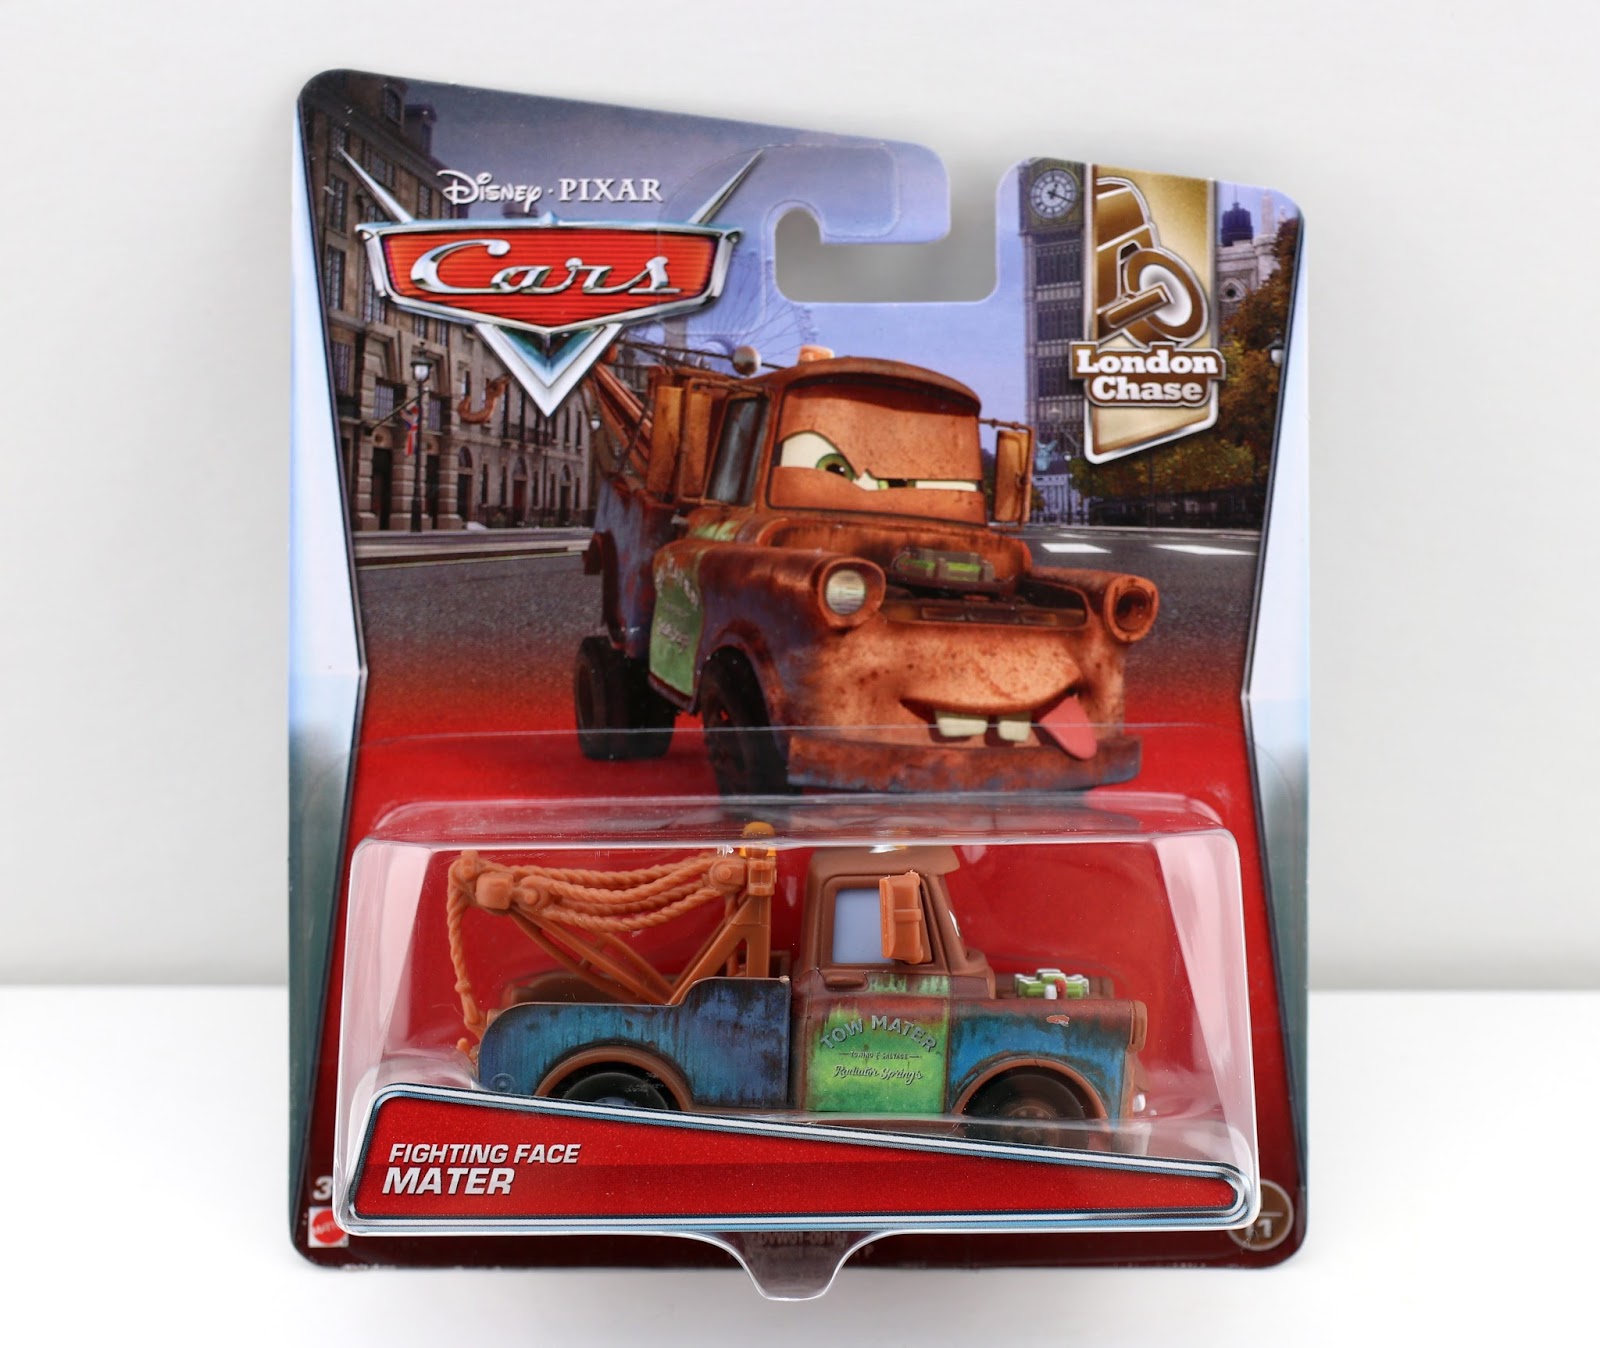 Aggregaat Van toepassing zijn Uitstekend Dan the Pixar Fan: Cars 2: Fighting Face Mater